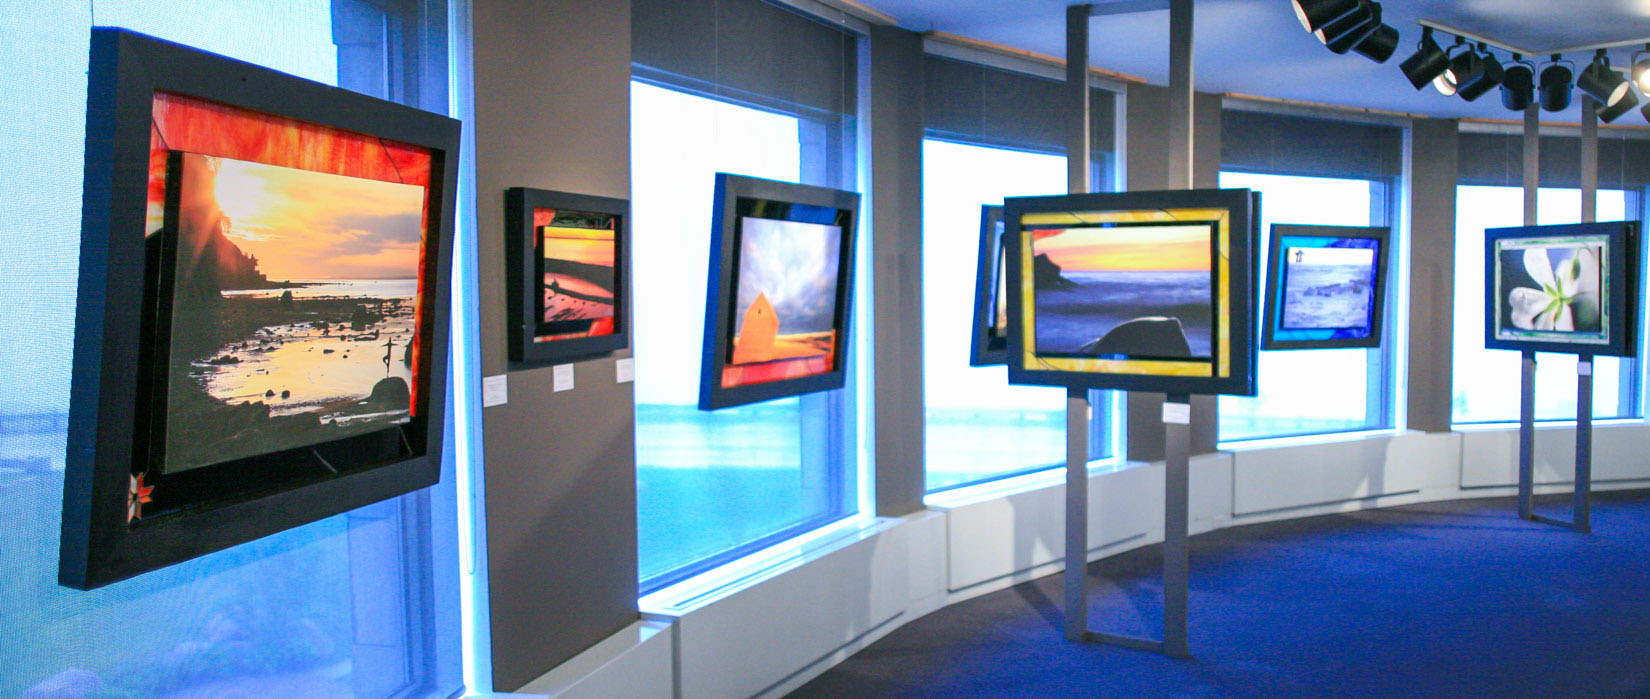 Oeuvres artistiques exposées dans une salle d’exposition avec de grandes fenêtres. Au premier plan, une œuvre représentant la silhouette d’une femme en équilibre au bord de l’eau au lever du soleil.